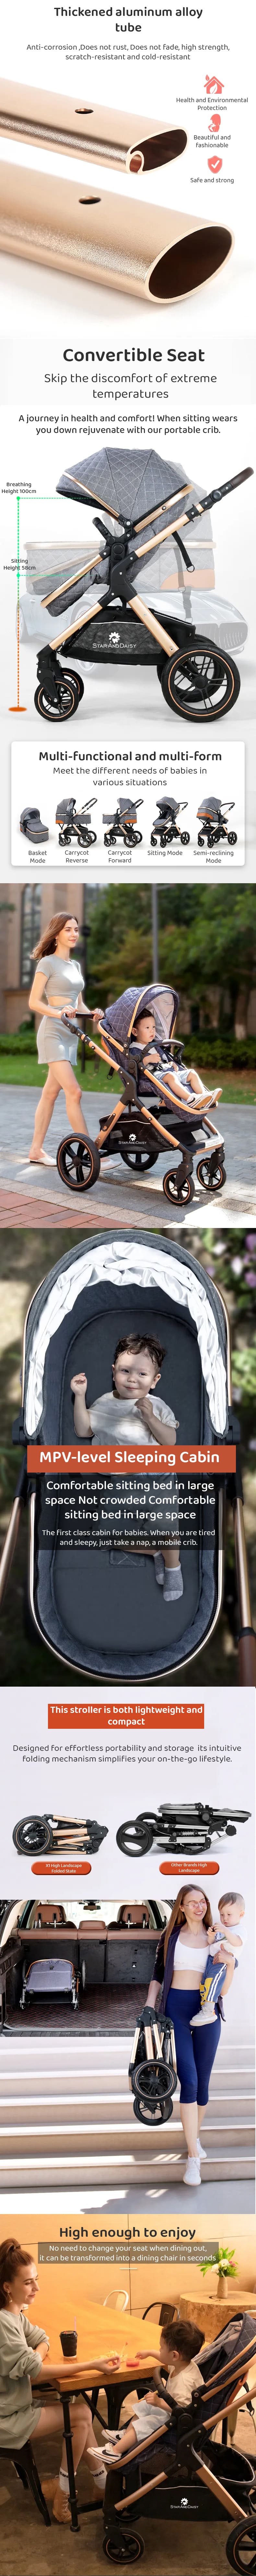 Travel Friendly Luxury Baby Stroller Pram for Kids